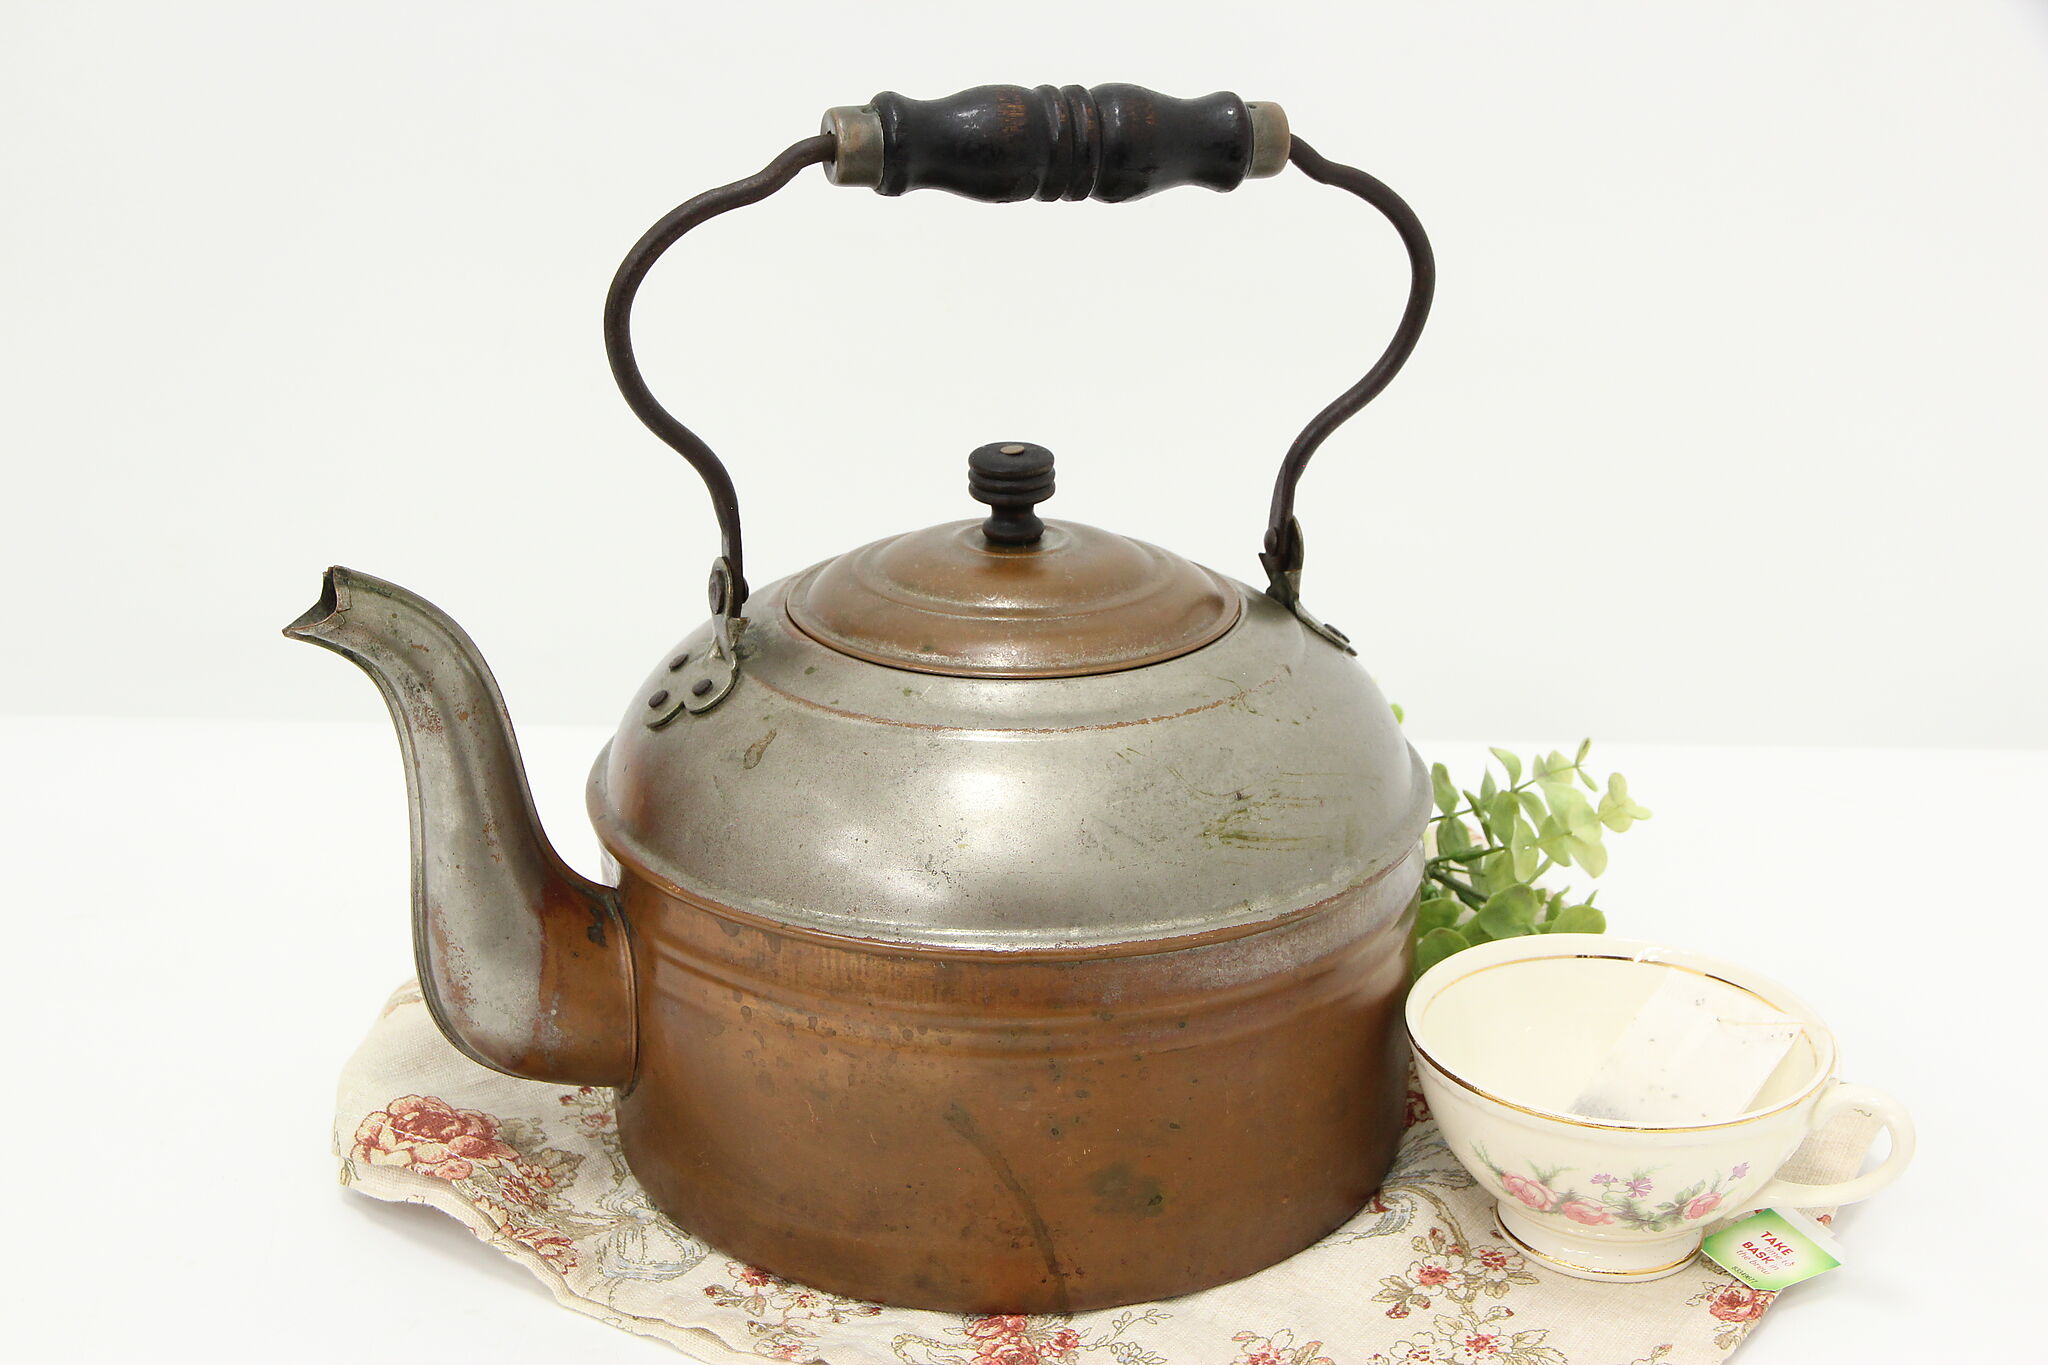  Tea Kettle for Stove Top, Vintage Tea Kettle, Copper